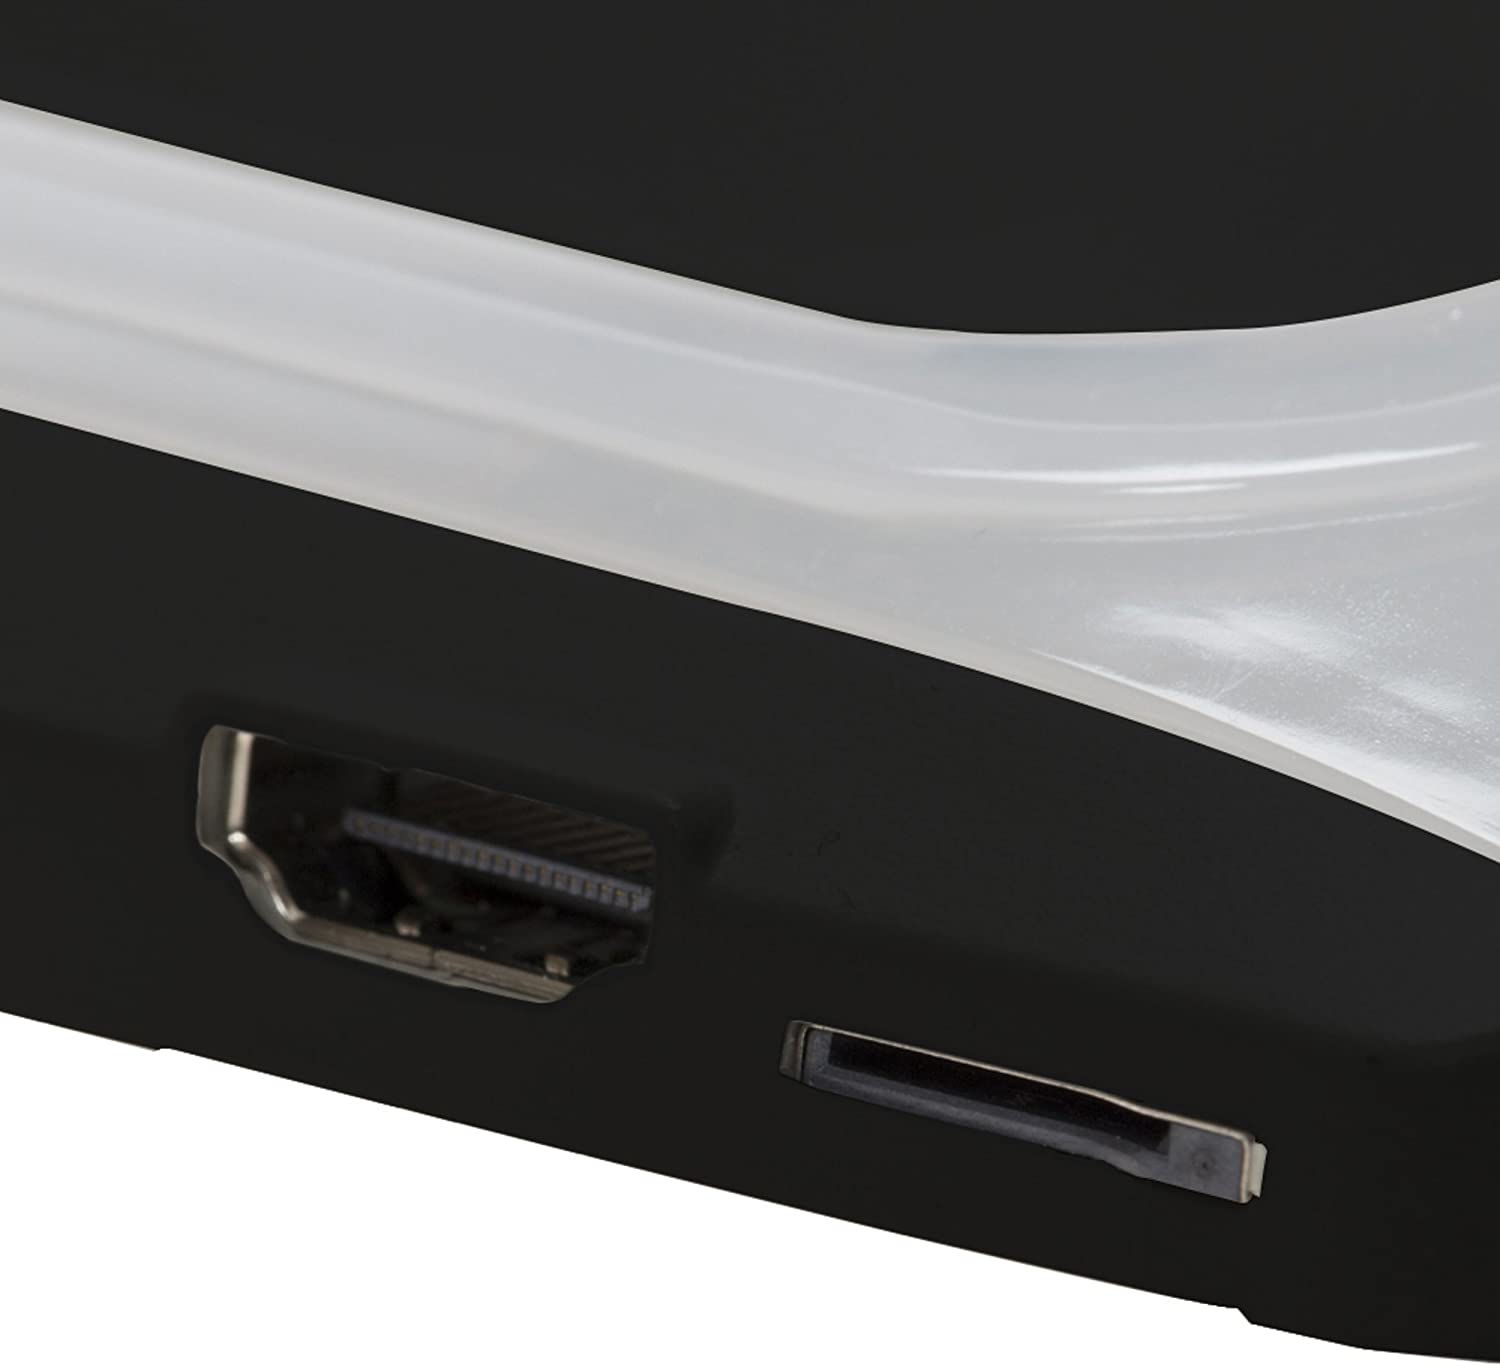 HDMI付きはスマホやパソコンなどの外部機器と接続できる